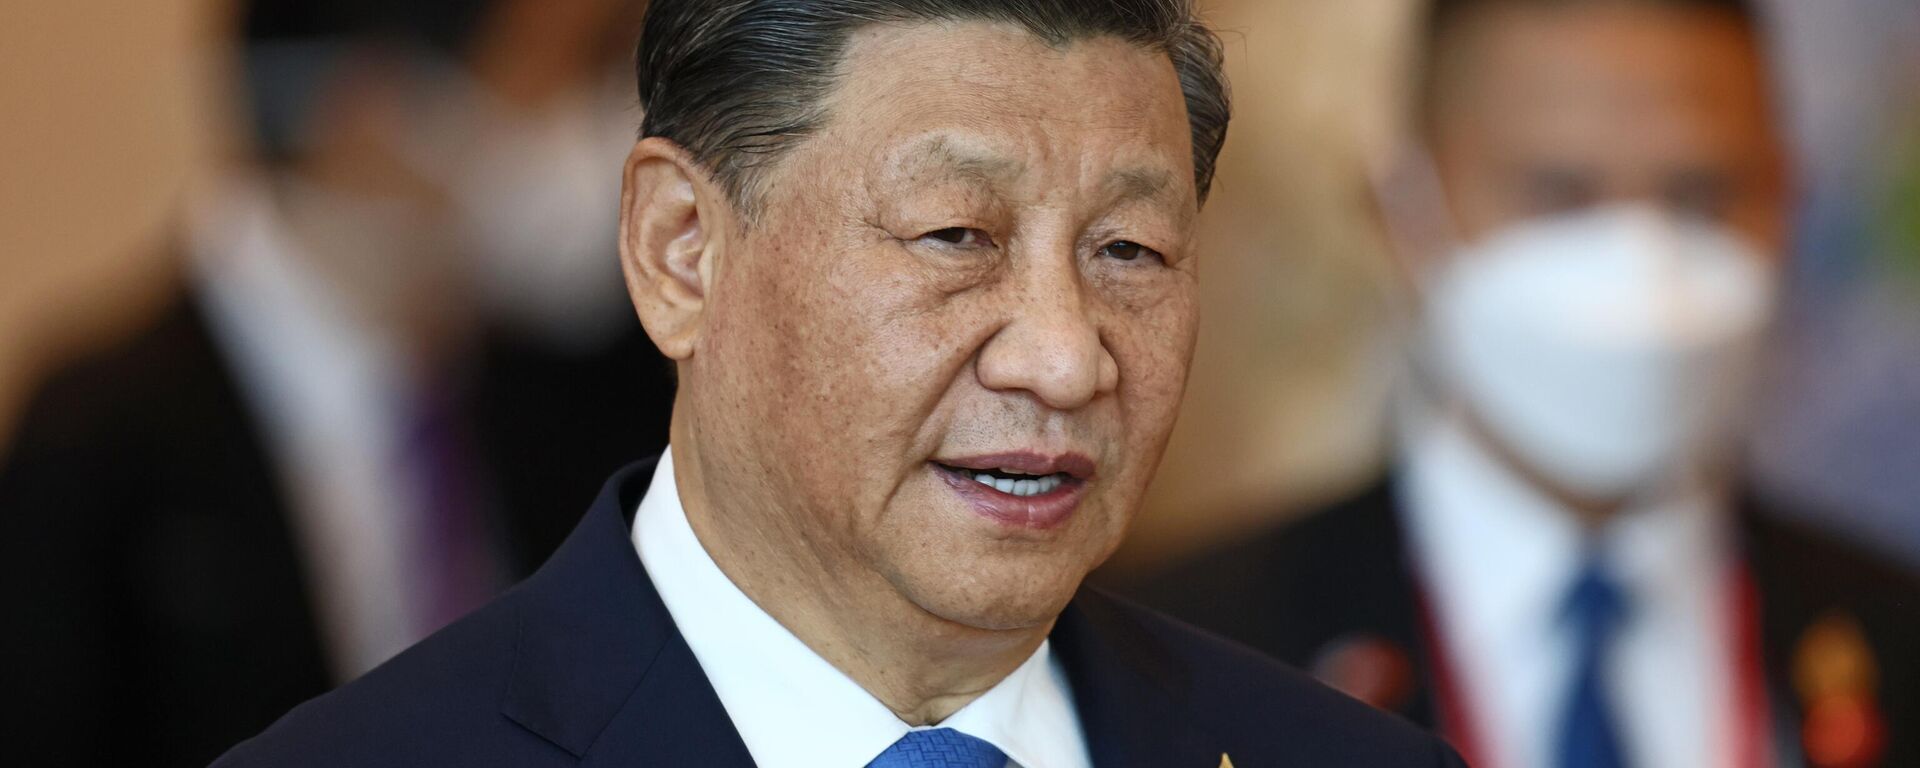 Xi Jinping, presidente de China, en la Reunión de Líderes Económicos de la APEC durante la cumbre del Foro de Cooperación Económica Asia-Pacífico, en Bangkok, Tailandia, el 19 de noviembre de 2022 - Sputnik Mundo, 1920, 18.11.2023